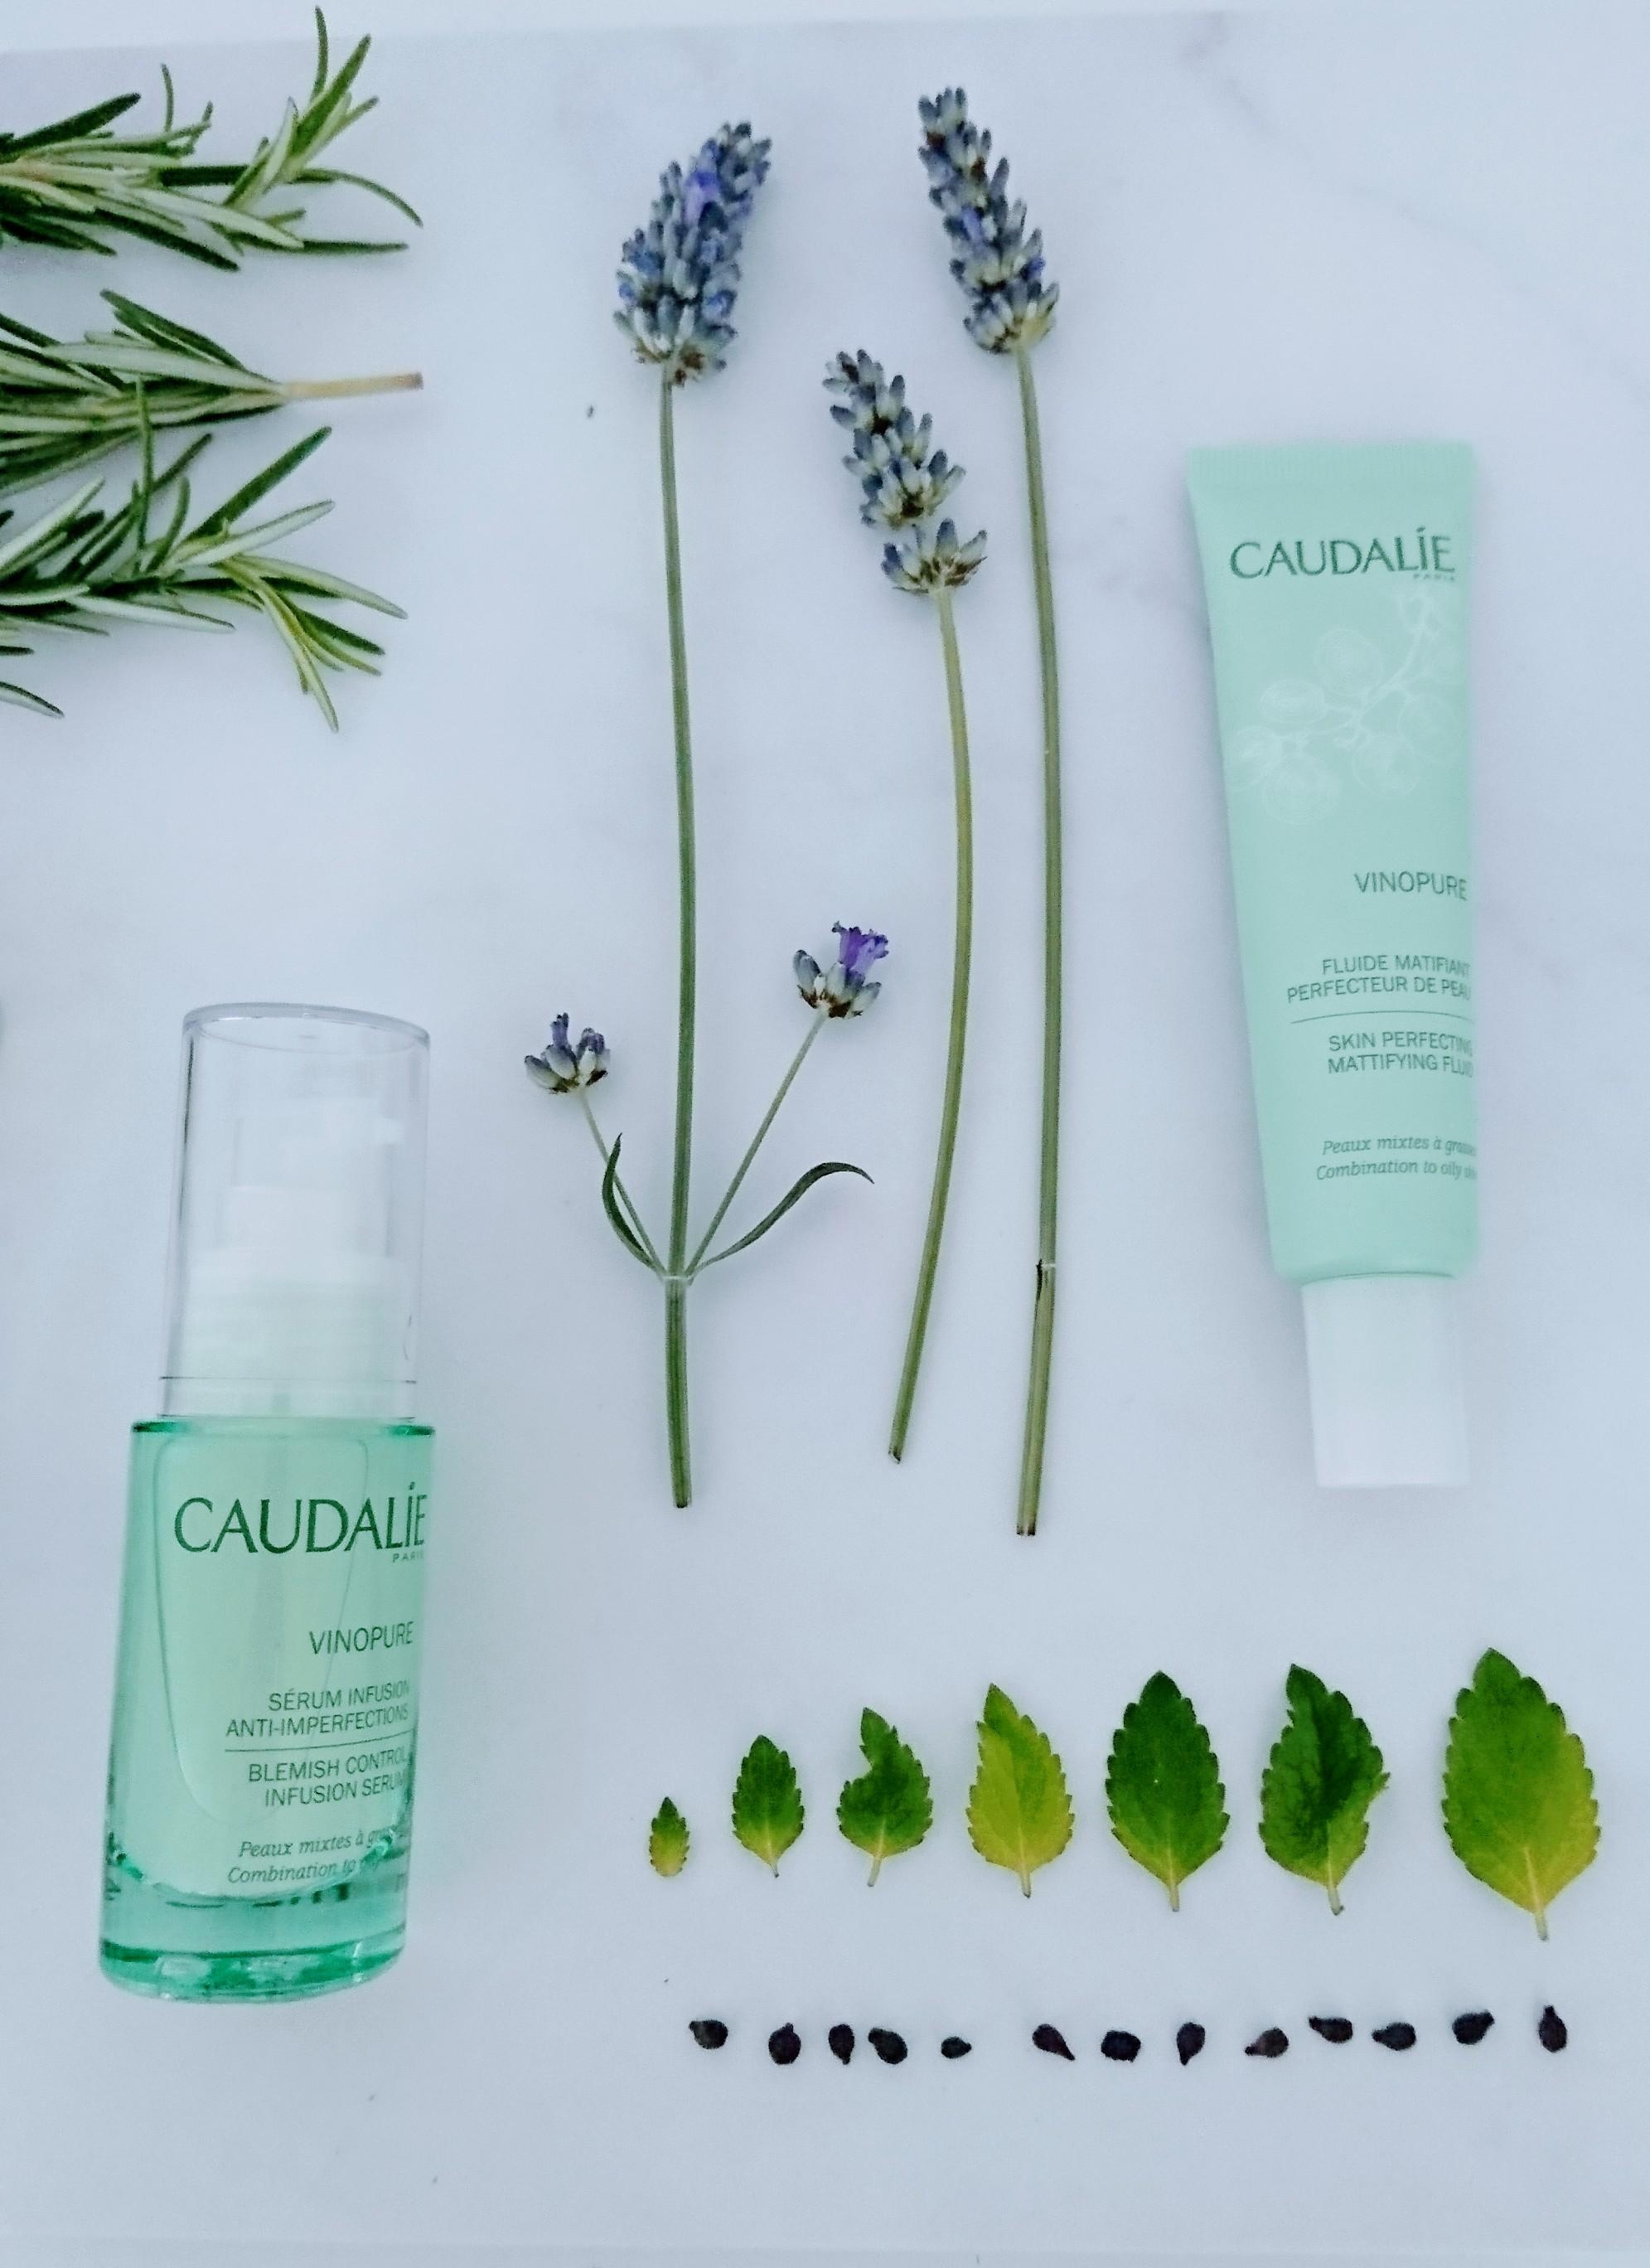 Die neue natürliche Pflege von Caudalie für unreine Haut gibt’s ab September! #caudalie #french #cleanbeauty